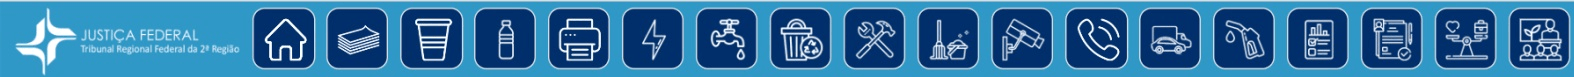 Vários ícones sobre sustentabilidade